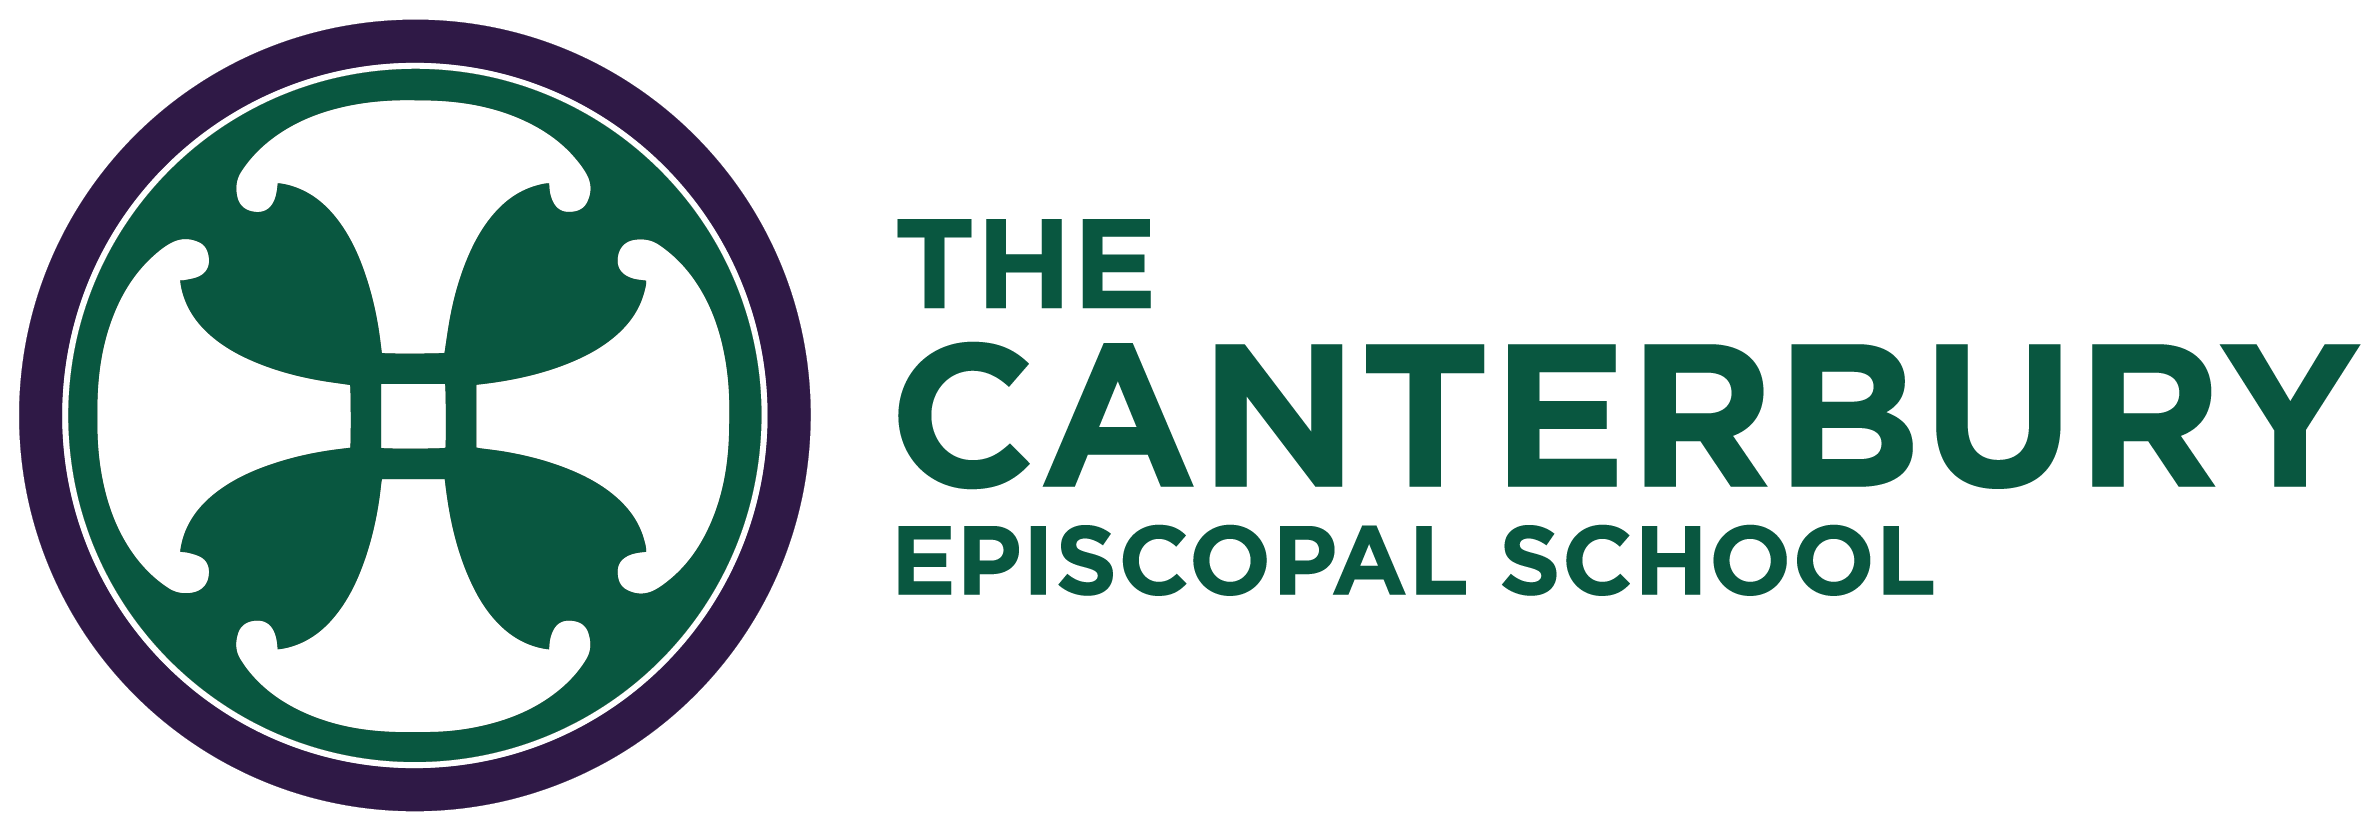 The Canterbury Episcopal School logo